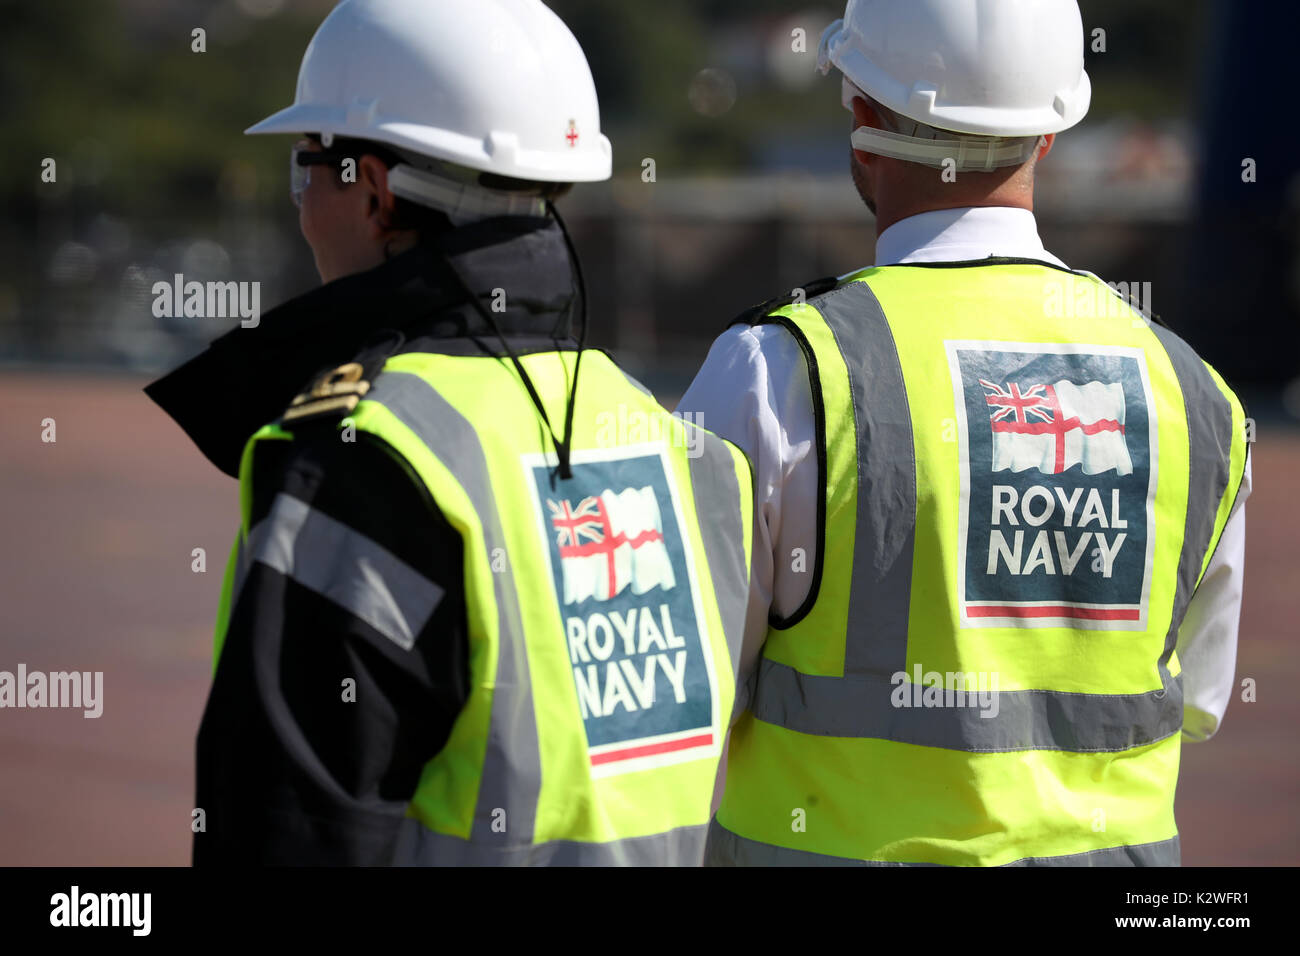 Los trabajadores en la cubierta de vuelo del HMS Prince of Wales, por delante de una ceremonia de nomenclatura del portaaviones, en Rosyth Dockyard, Fife. Foto de stock